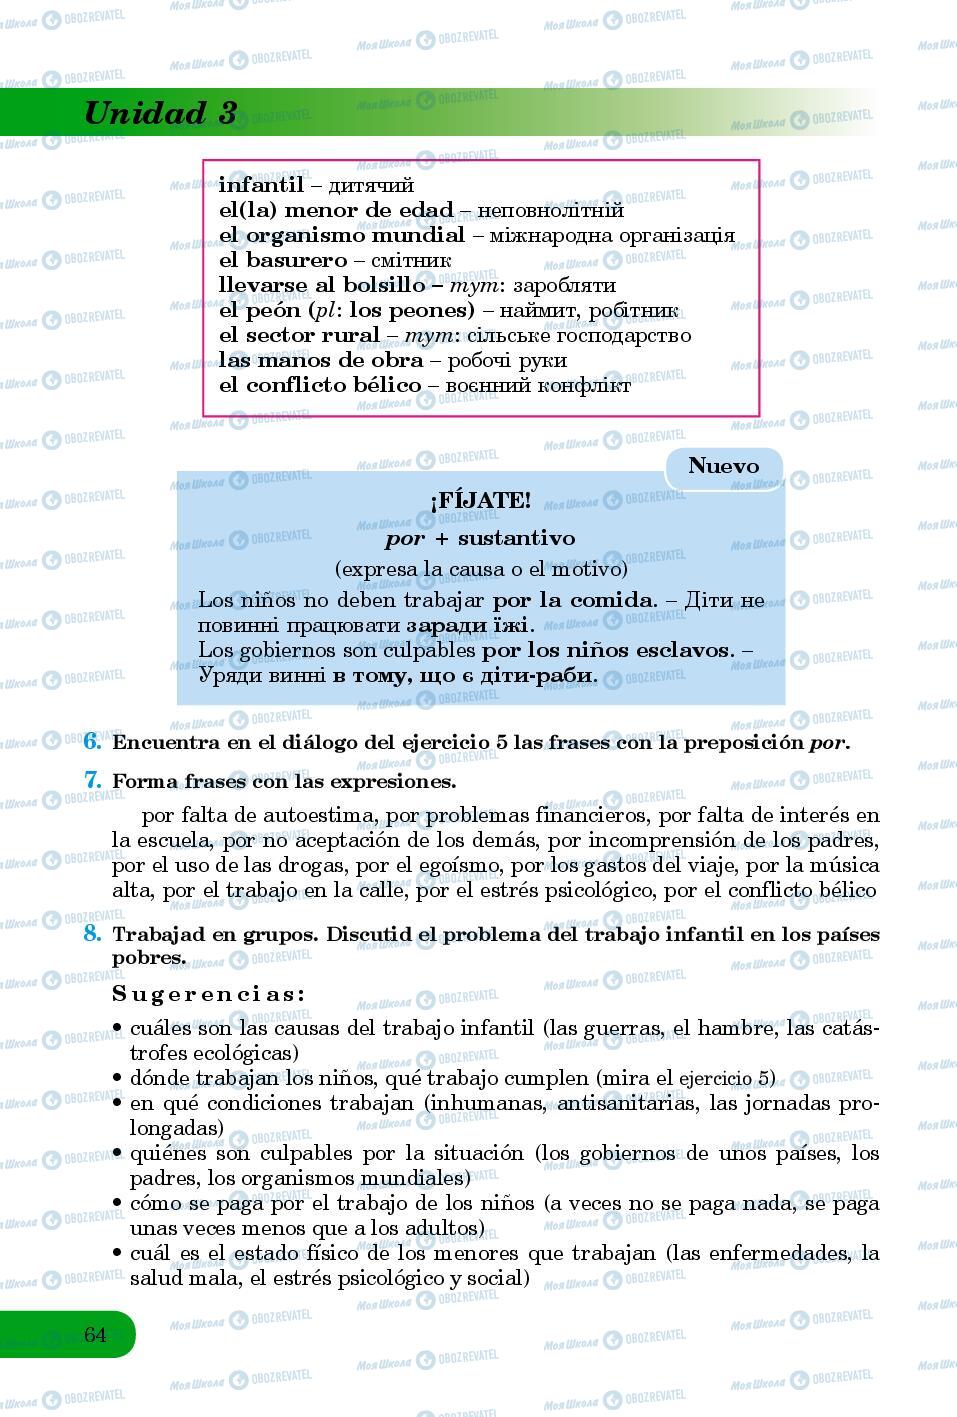 Учебники Испанский язык 8 класс страница 64